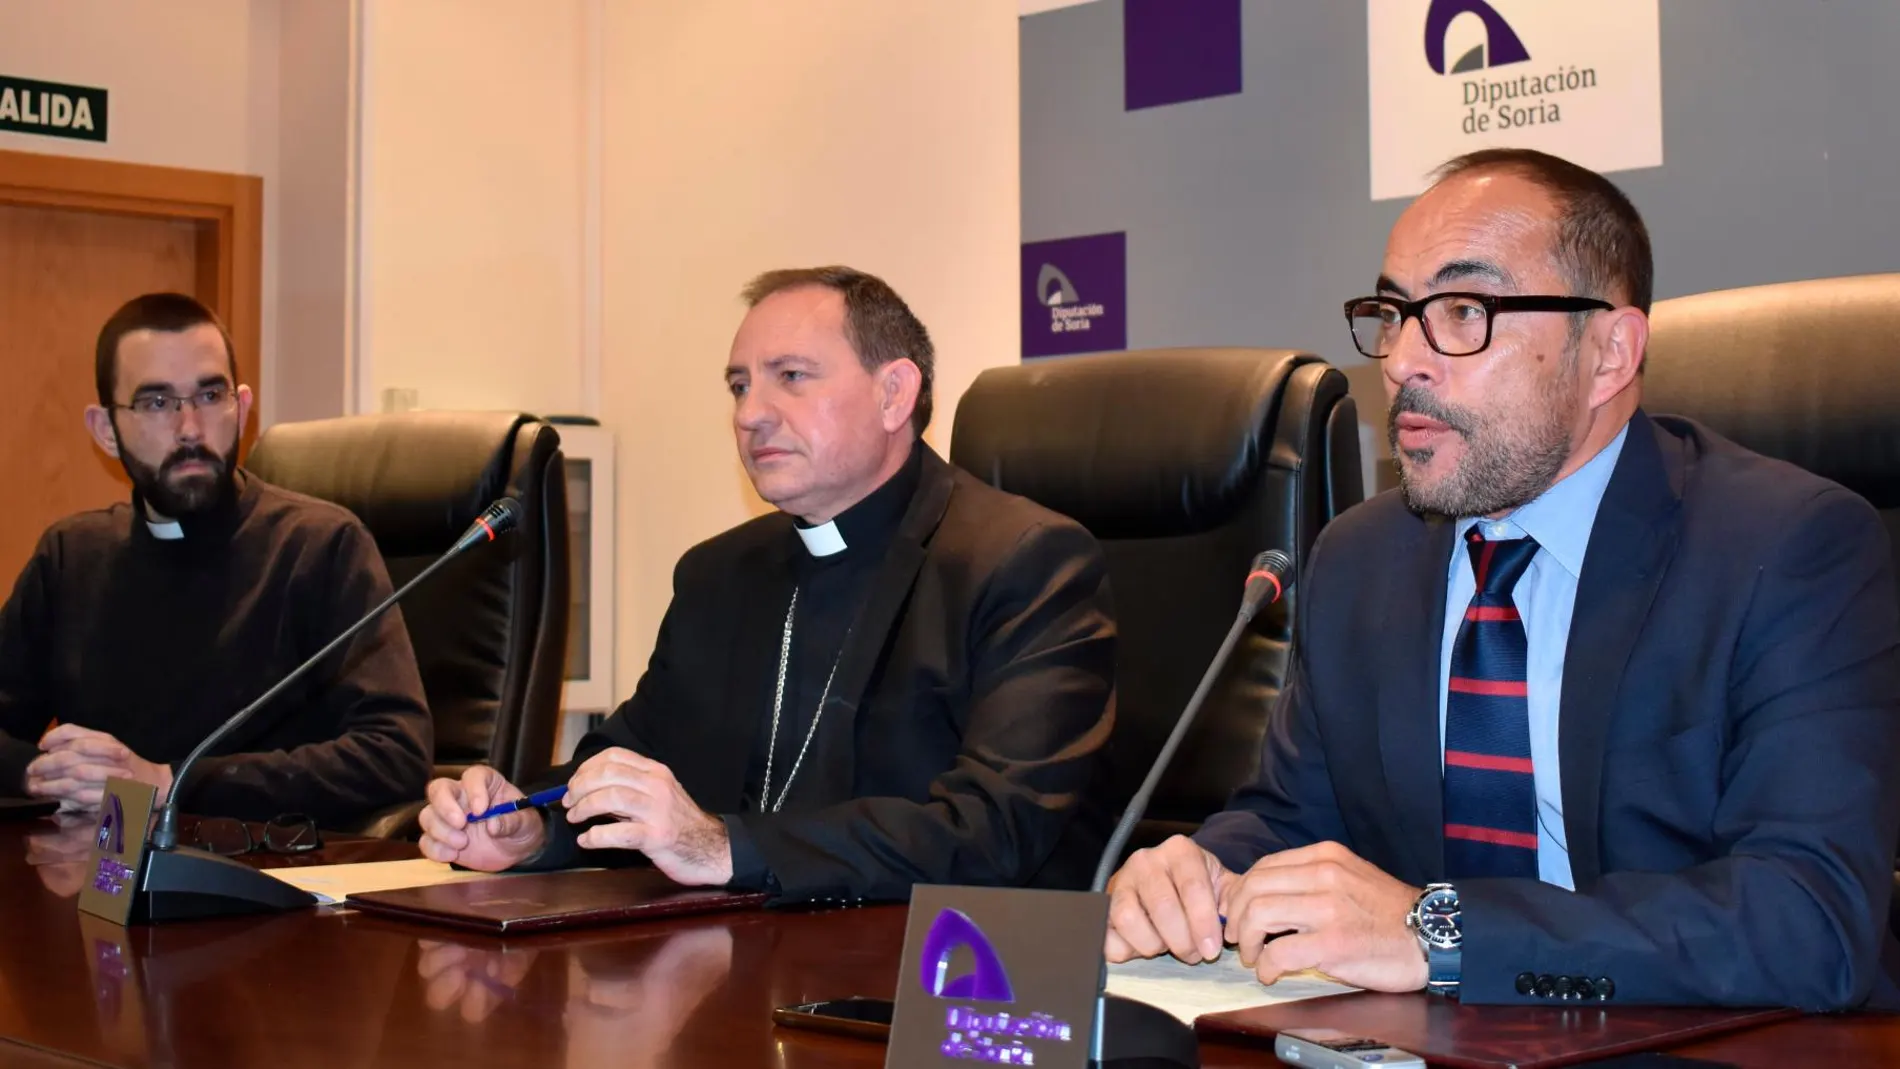 El presidente de la Diputación, Luis Rey, y el obispo de Osma-Soria, Abilio Martínez, suscriben el acuerdo de colaboración en presencia de Rubén Tejedor